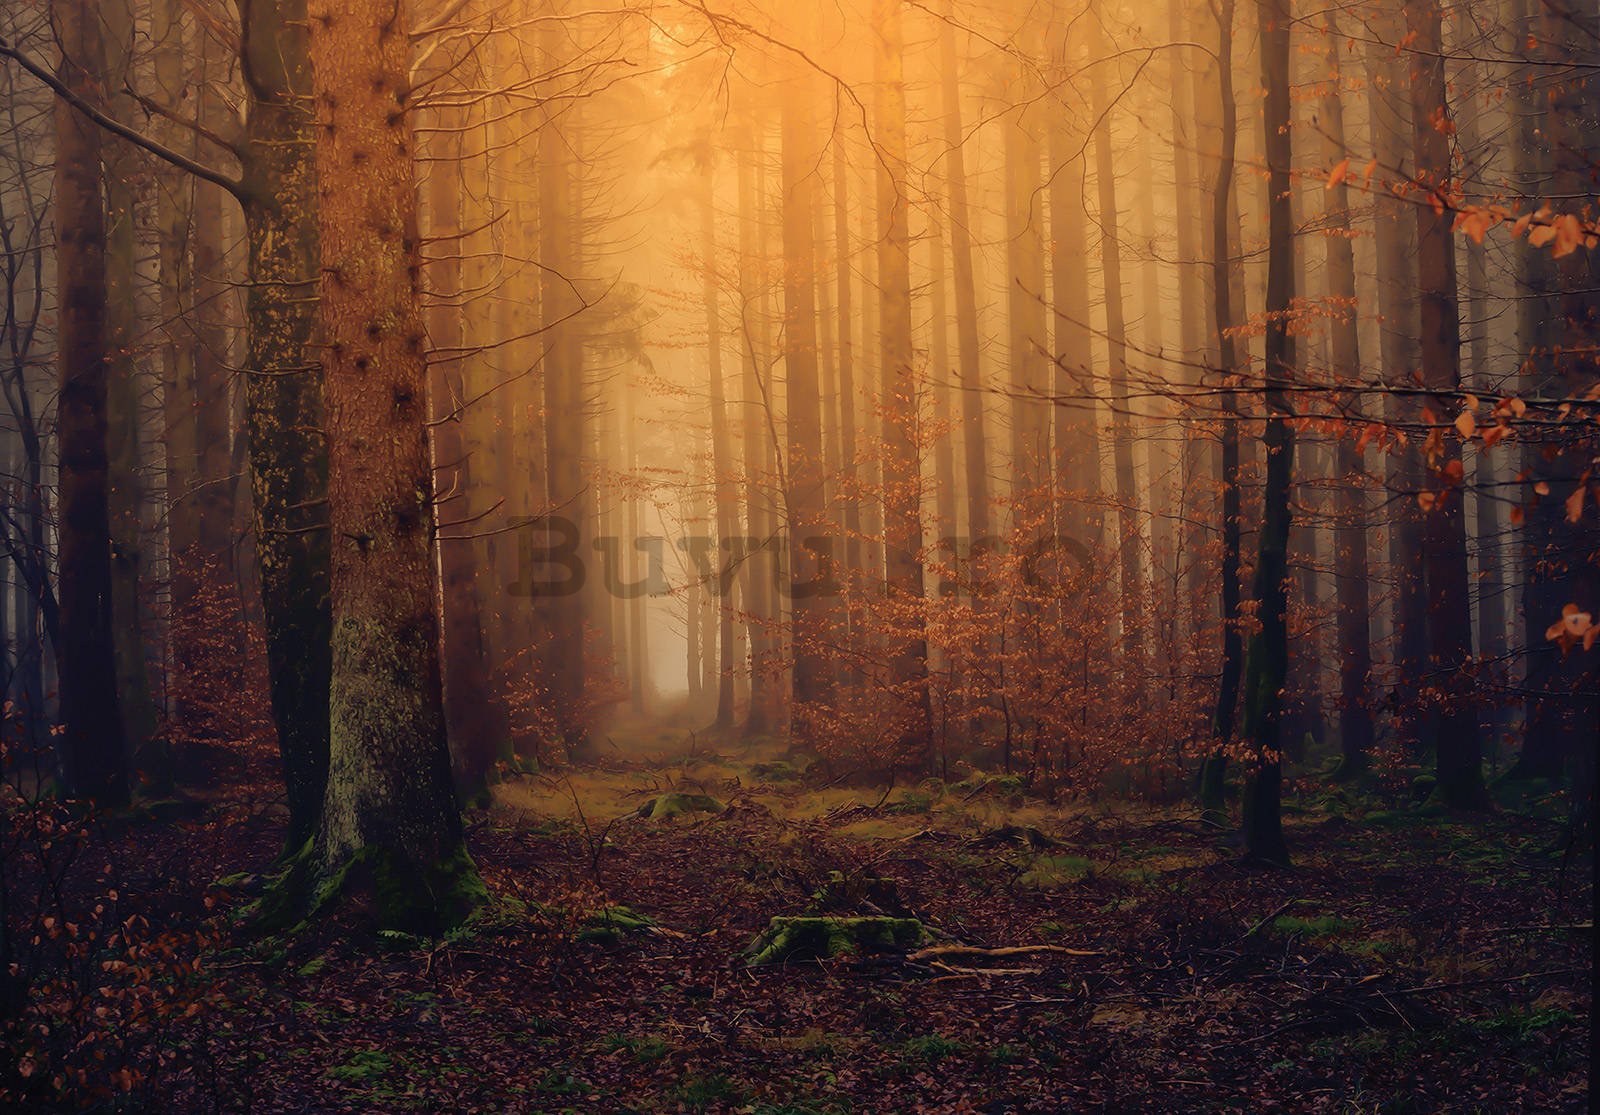 Fototapet vlies: Pădure de toamnă cu ceață - 152,5x104 cm